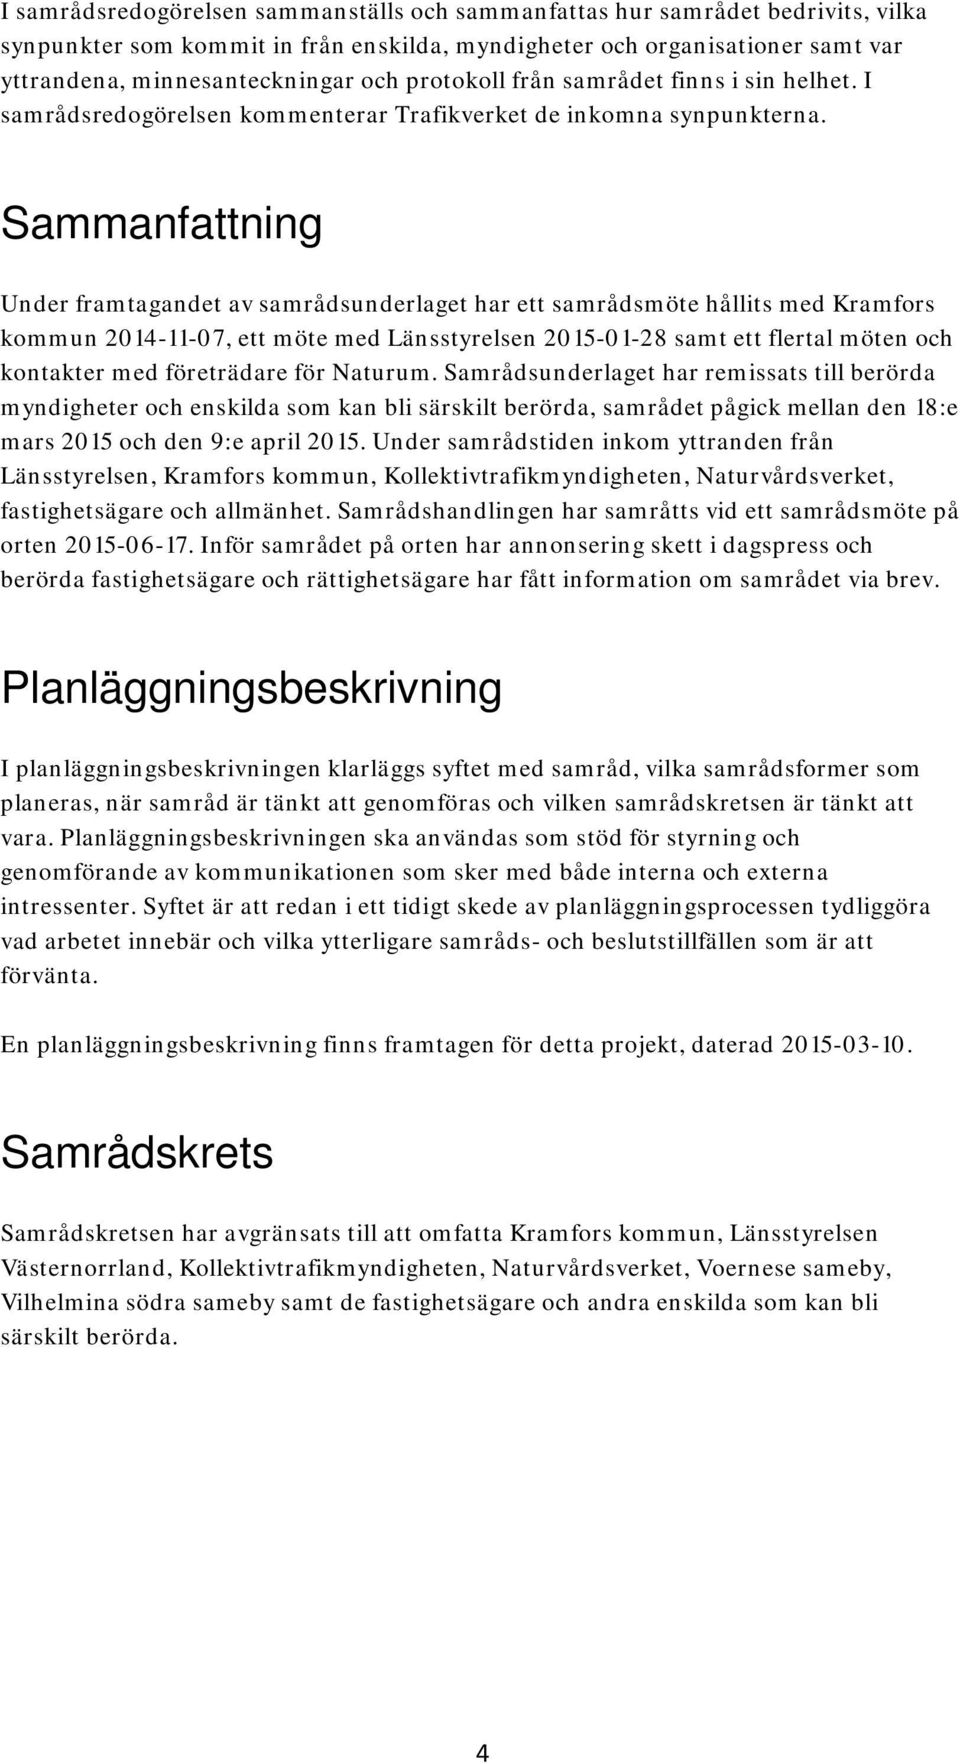 Sammanfattning Under framtagandet av samrådsunderlaget har ett samrådsmöte hållits med Kramfors kommun 2014-11-07, ett möte med Länsstyrelsen 2015-01-28 samt ett flertal möten och kontakter med